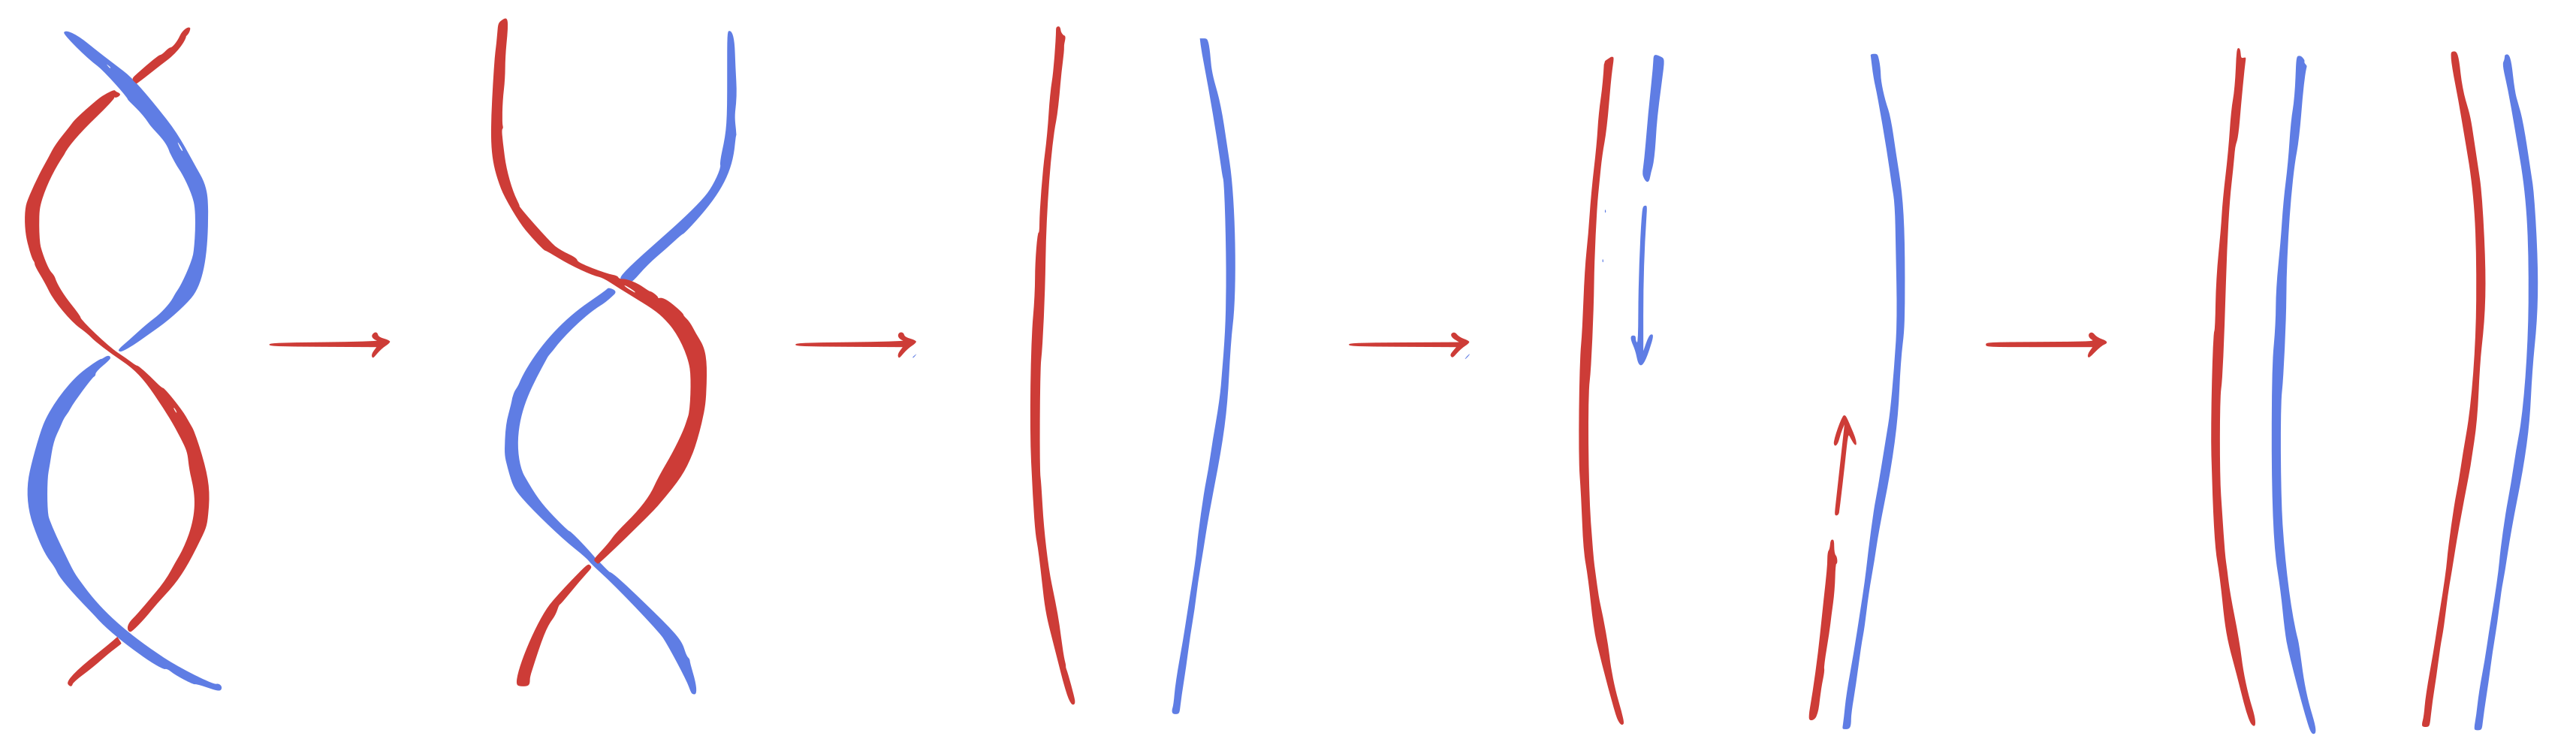 Proces replikácie znázornený na obrázku.